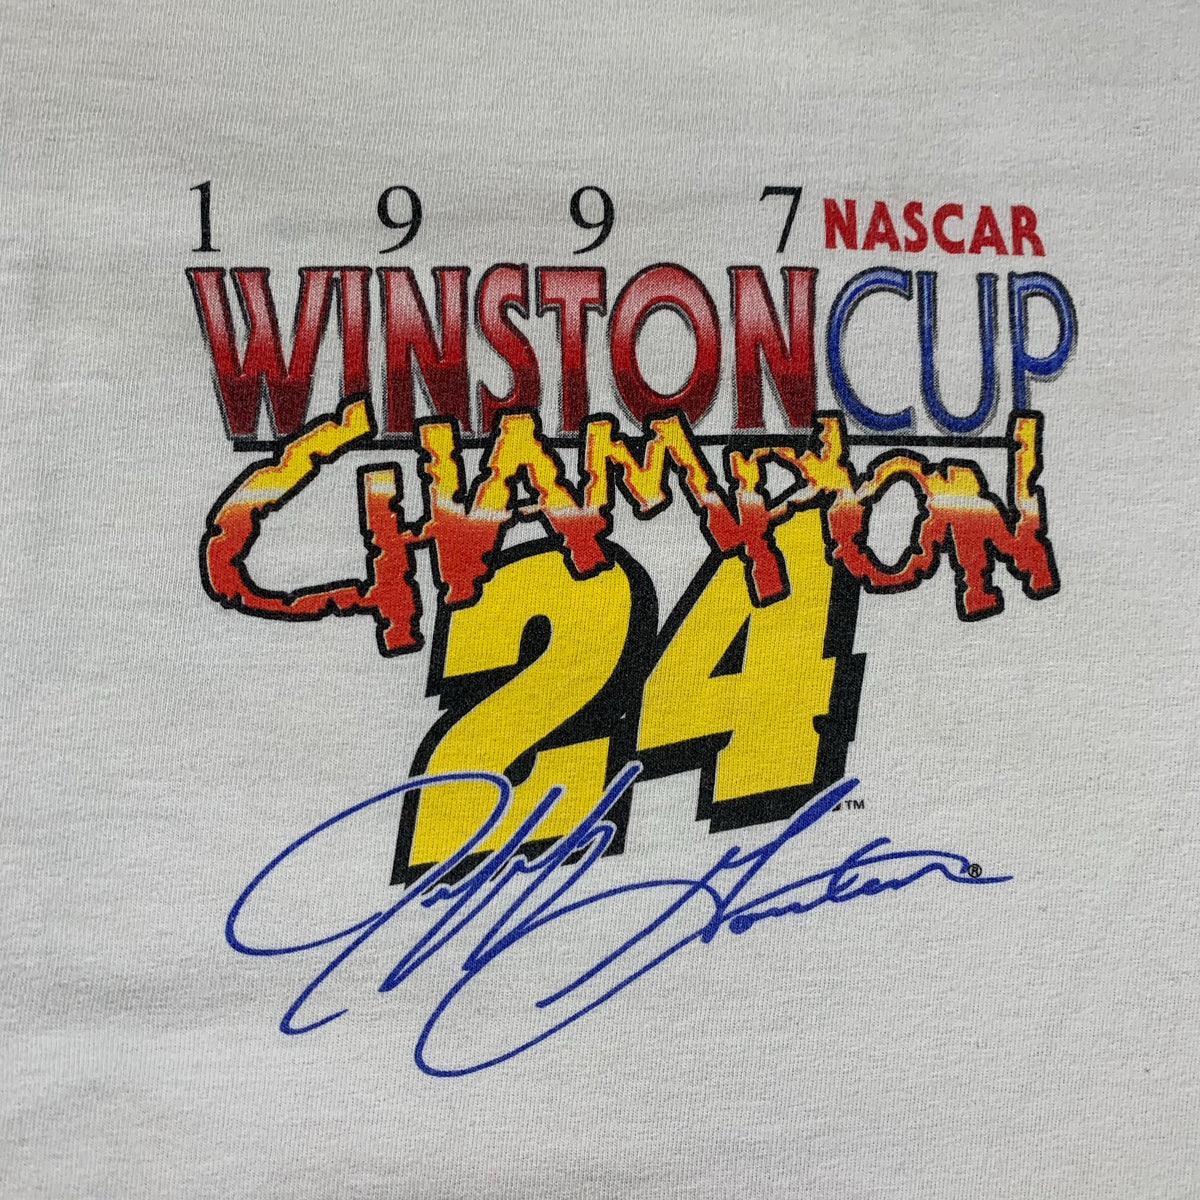 Vintage Nascar Jeff Gordon &quot;Winston Cup Champion &quot; T-Shirt